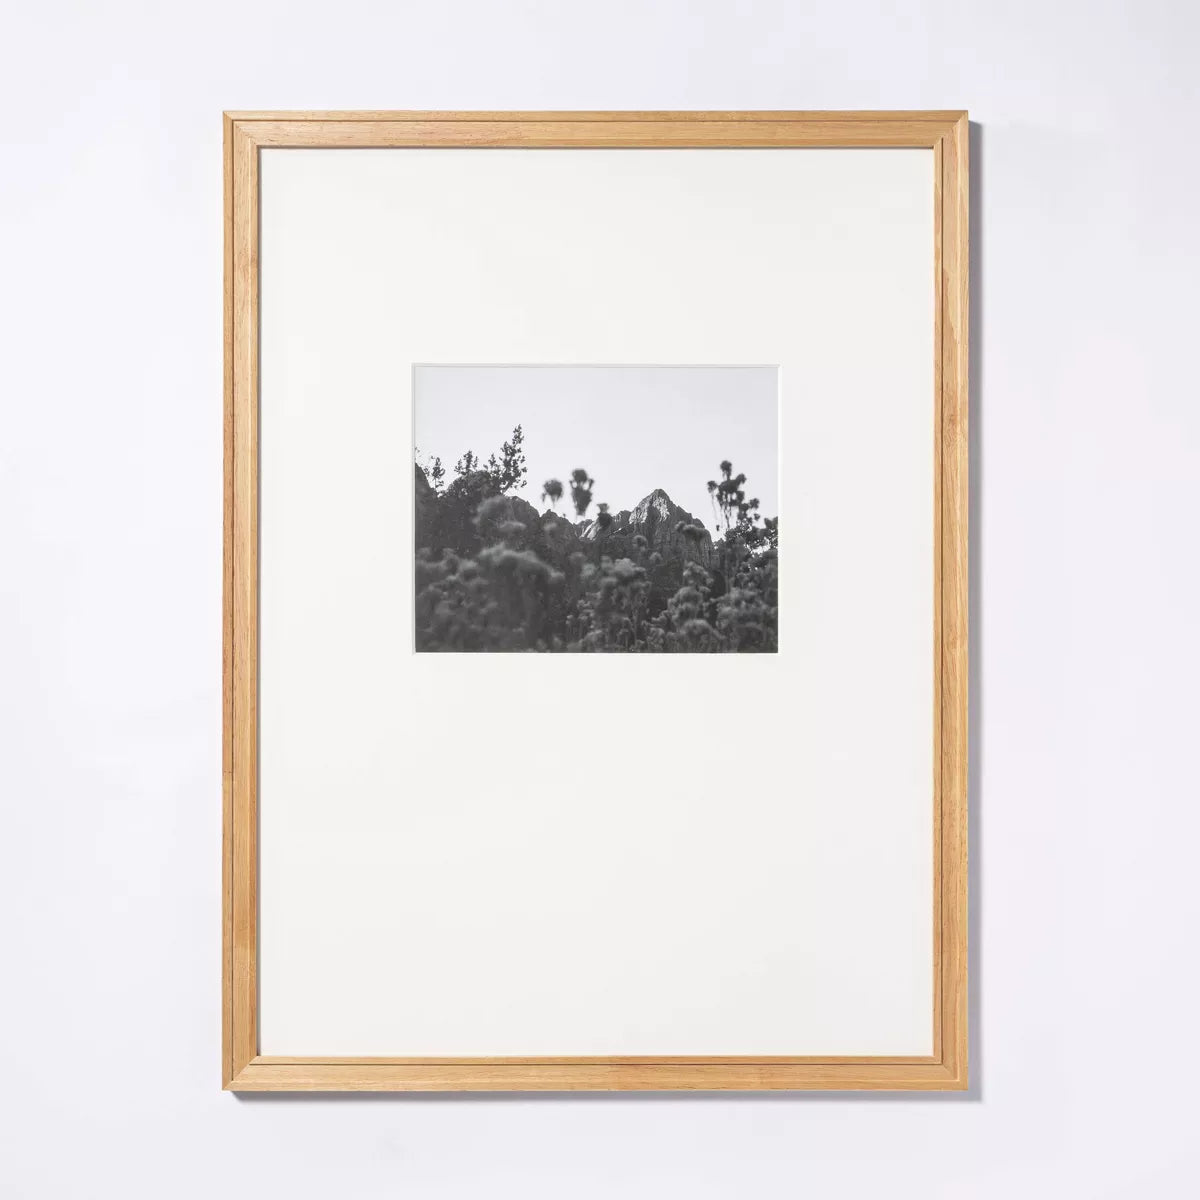 Gallery Frame Black Wood